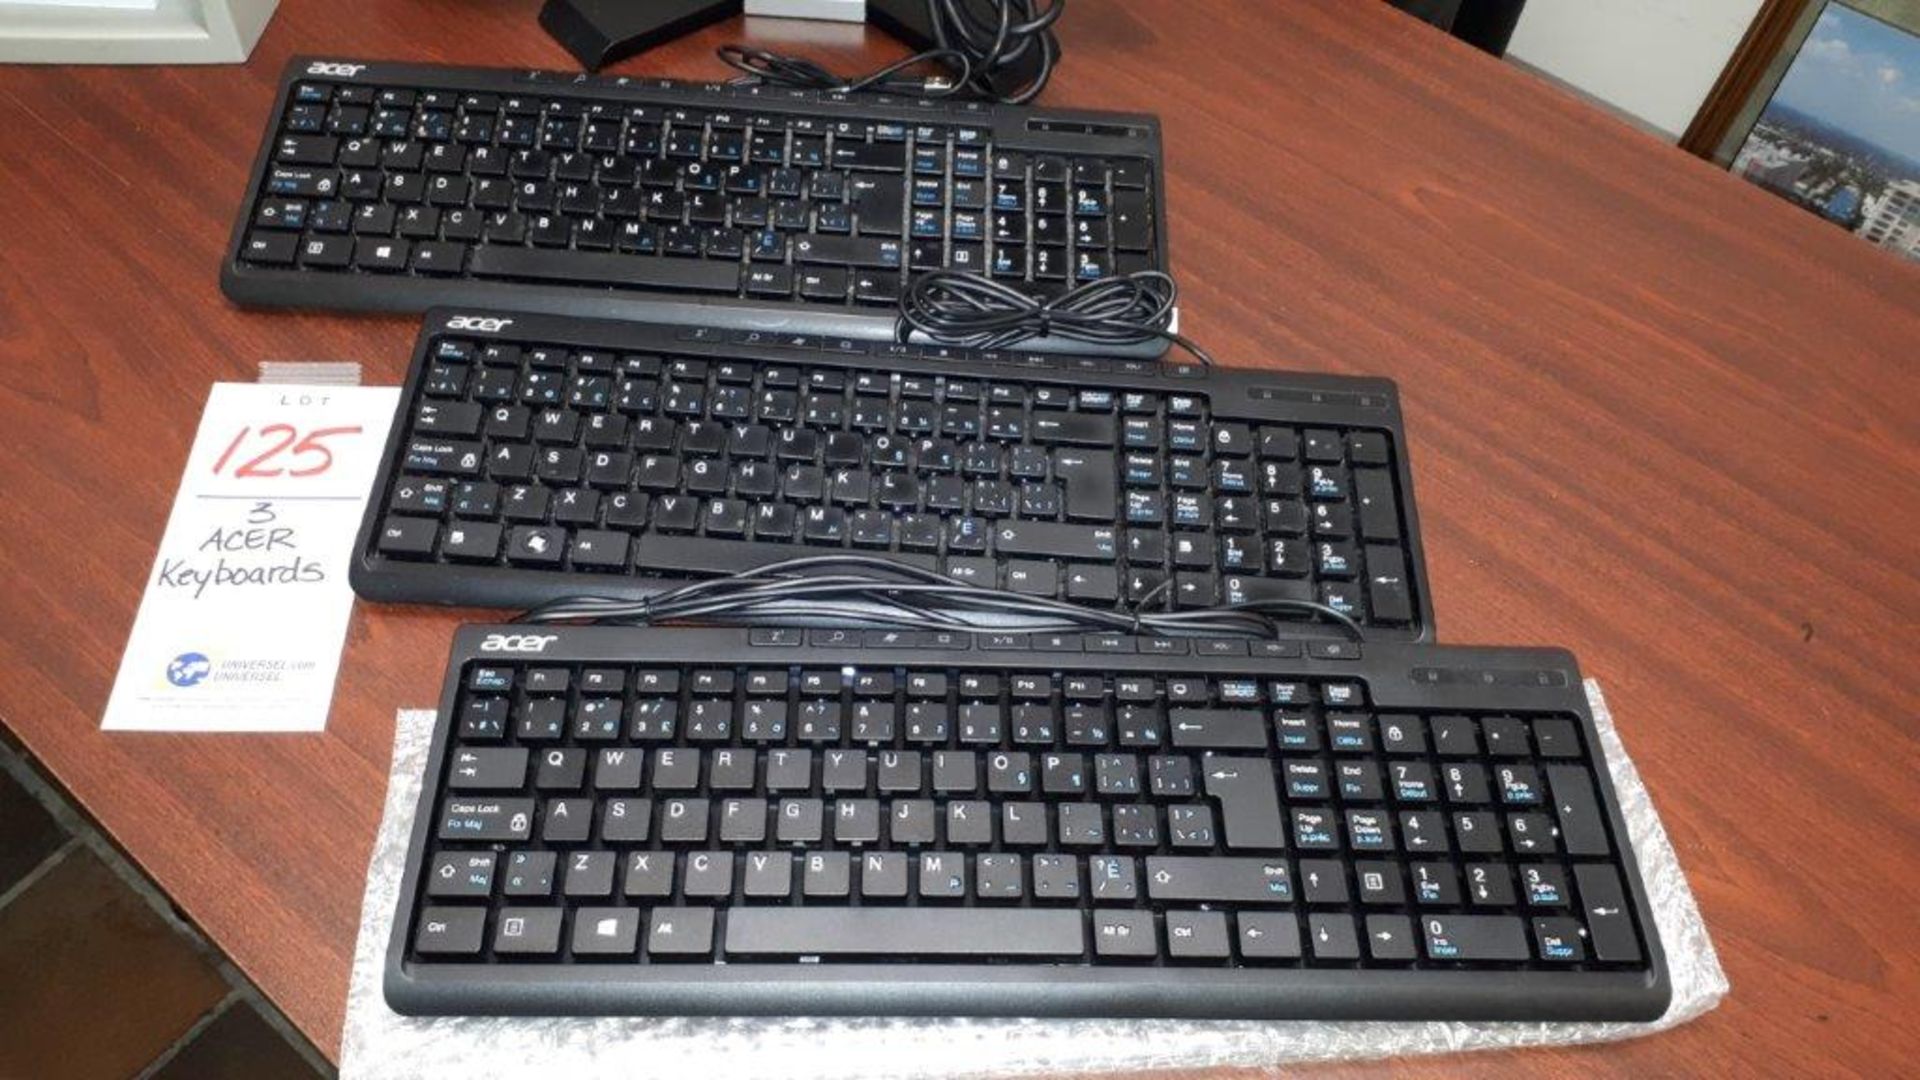 ACER keyboards